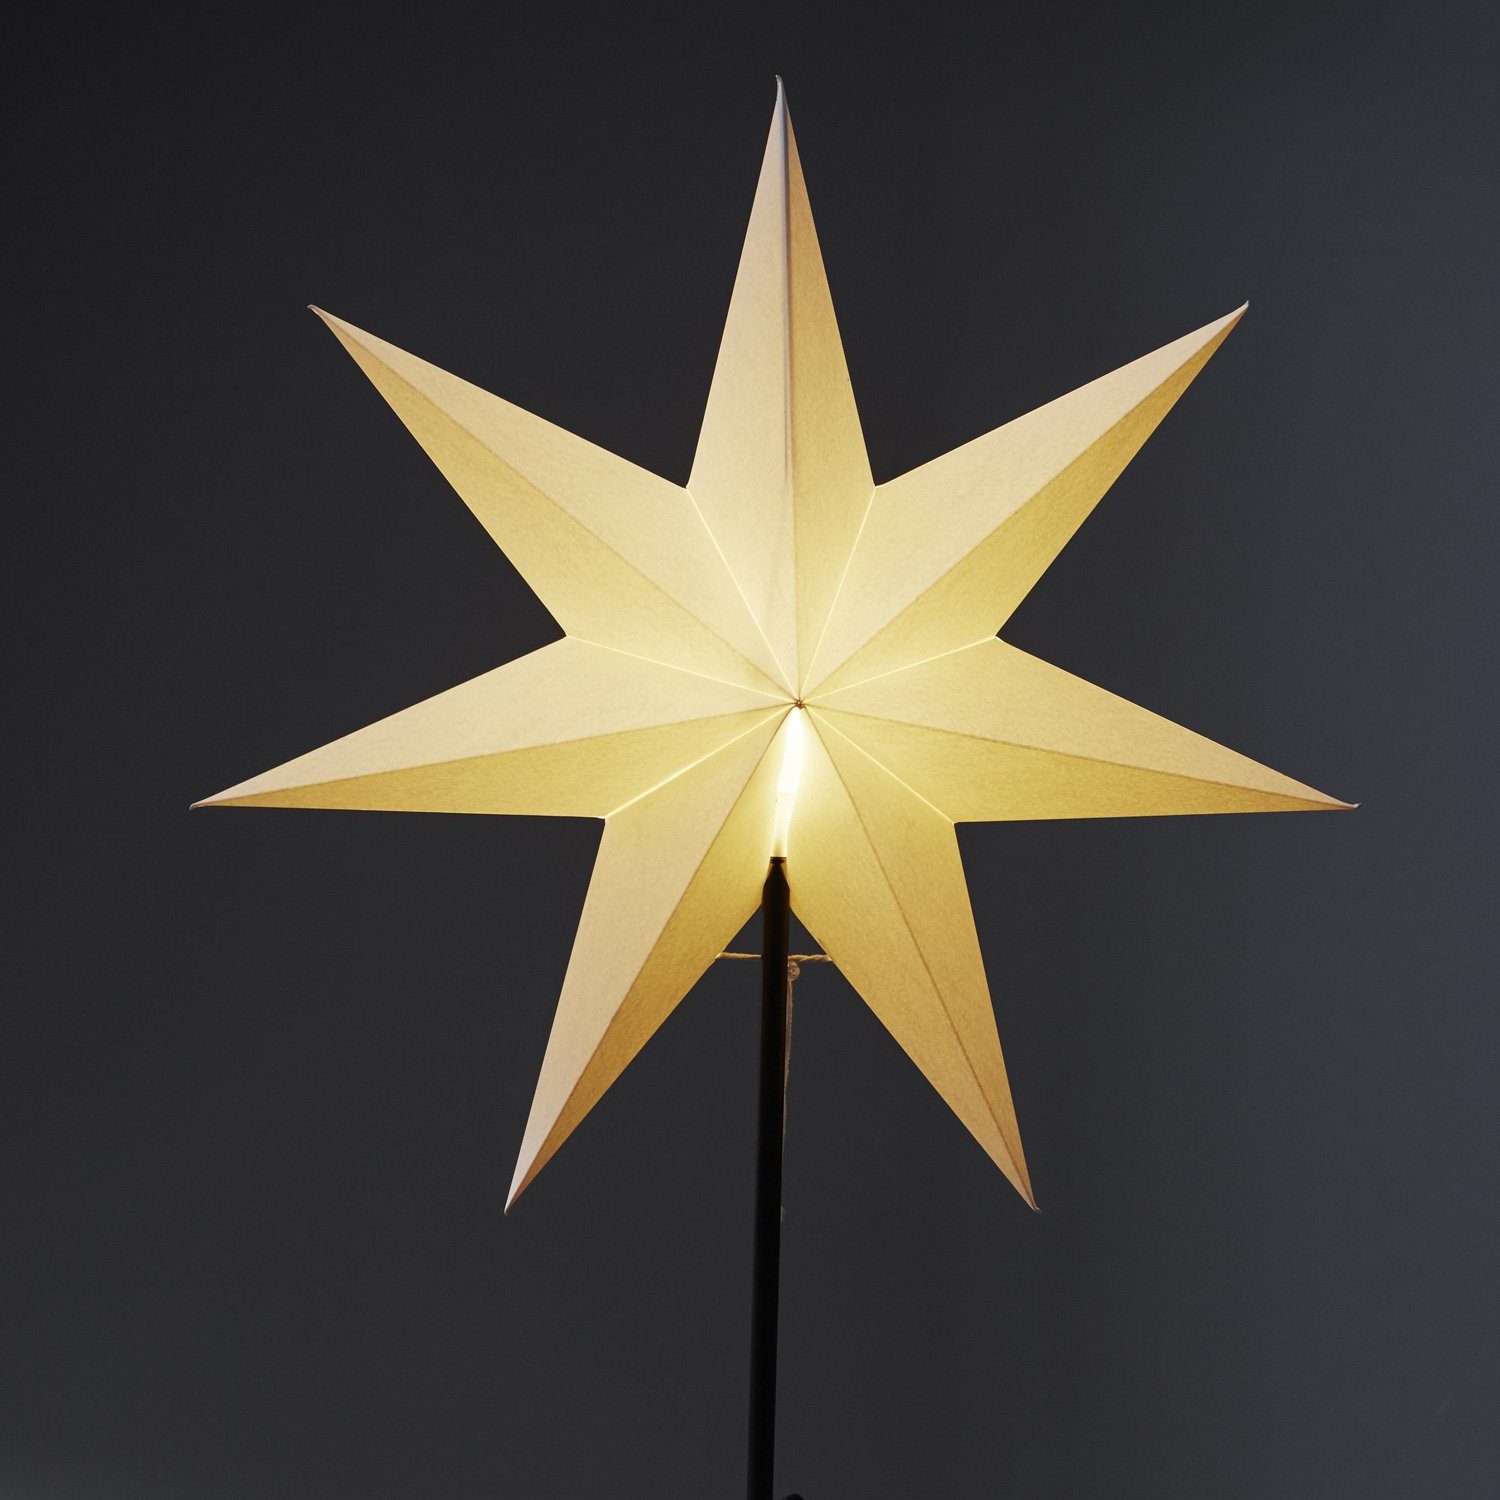 stehend E14 Kabel inkl. Weihnachtsstern 7-zackig TRADING Stern STAR weiß 55cm Papierstern LED